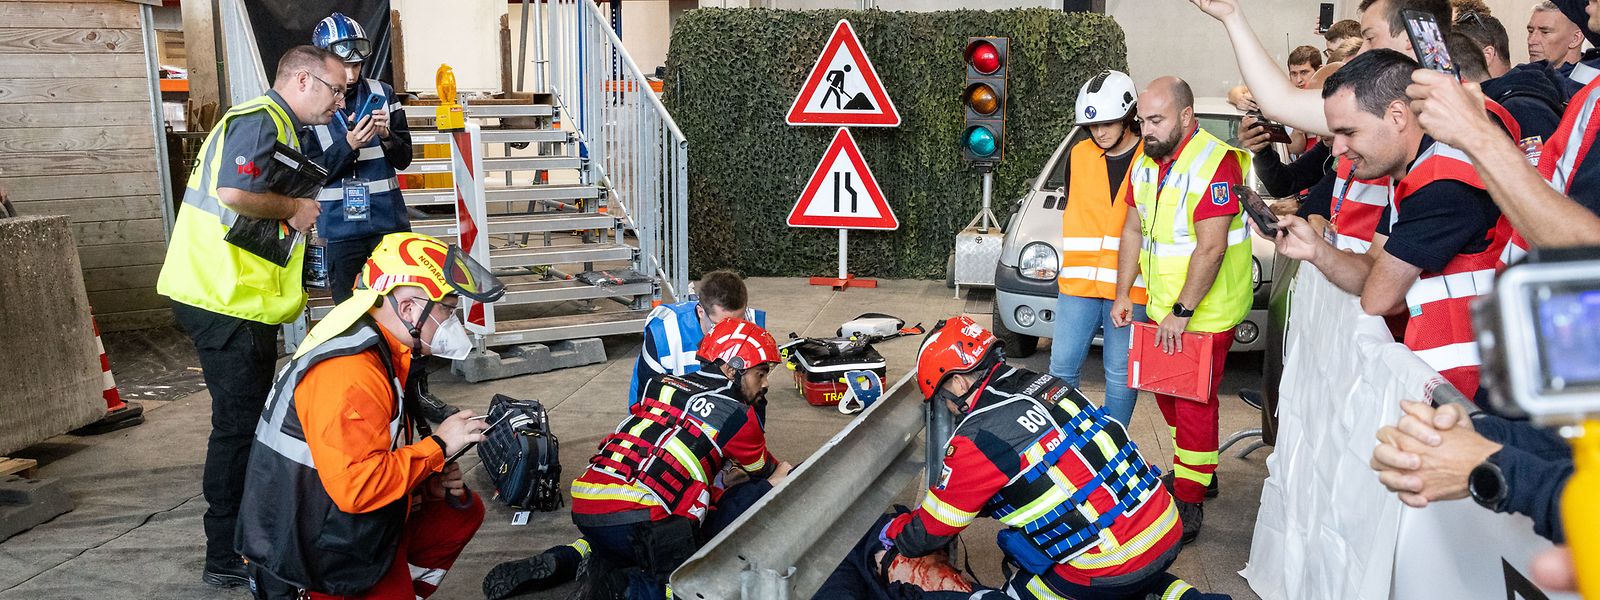 Les équipes de pompiers du monde entier concourent dans deux catégories lors de ce World Rescue Challenge: le secours routier et, ici, le secours à personne.